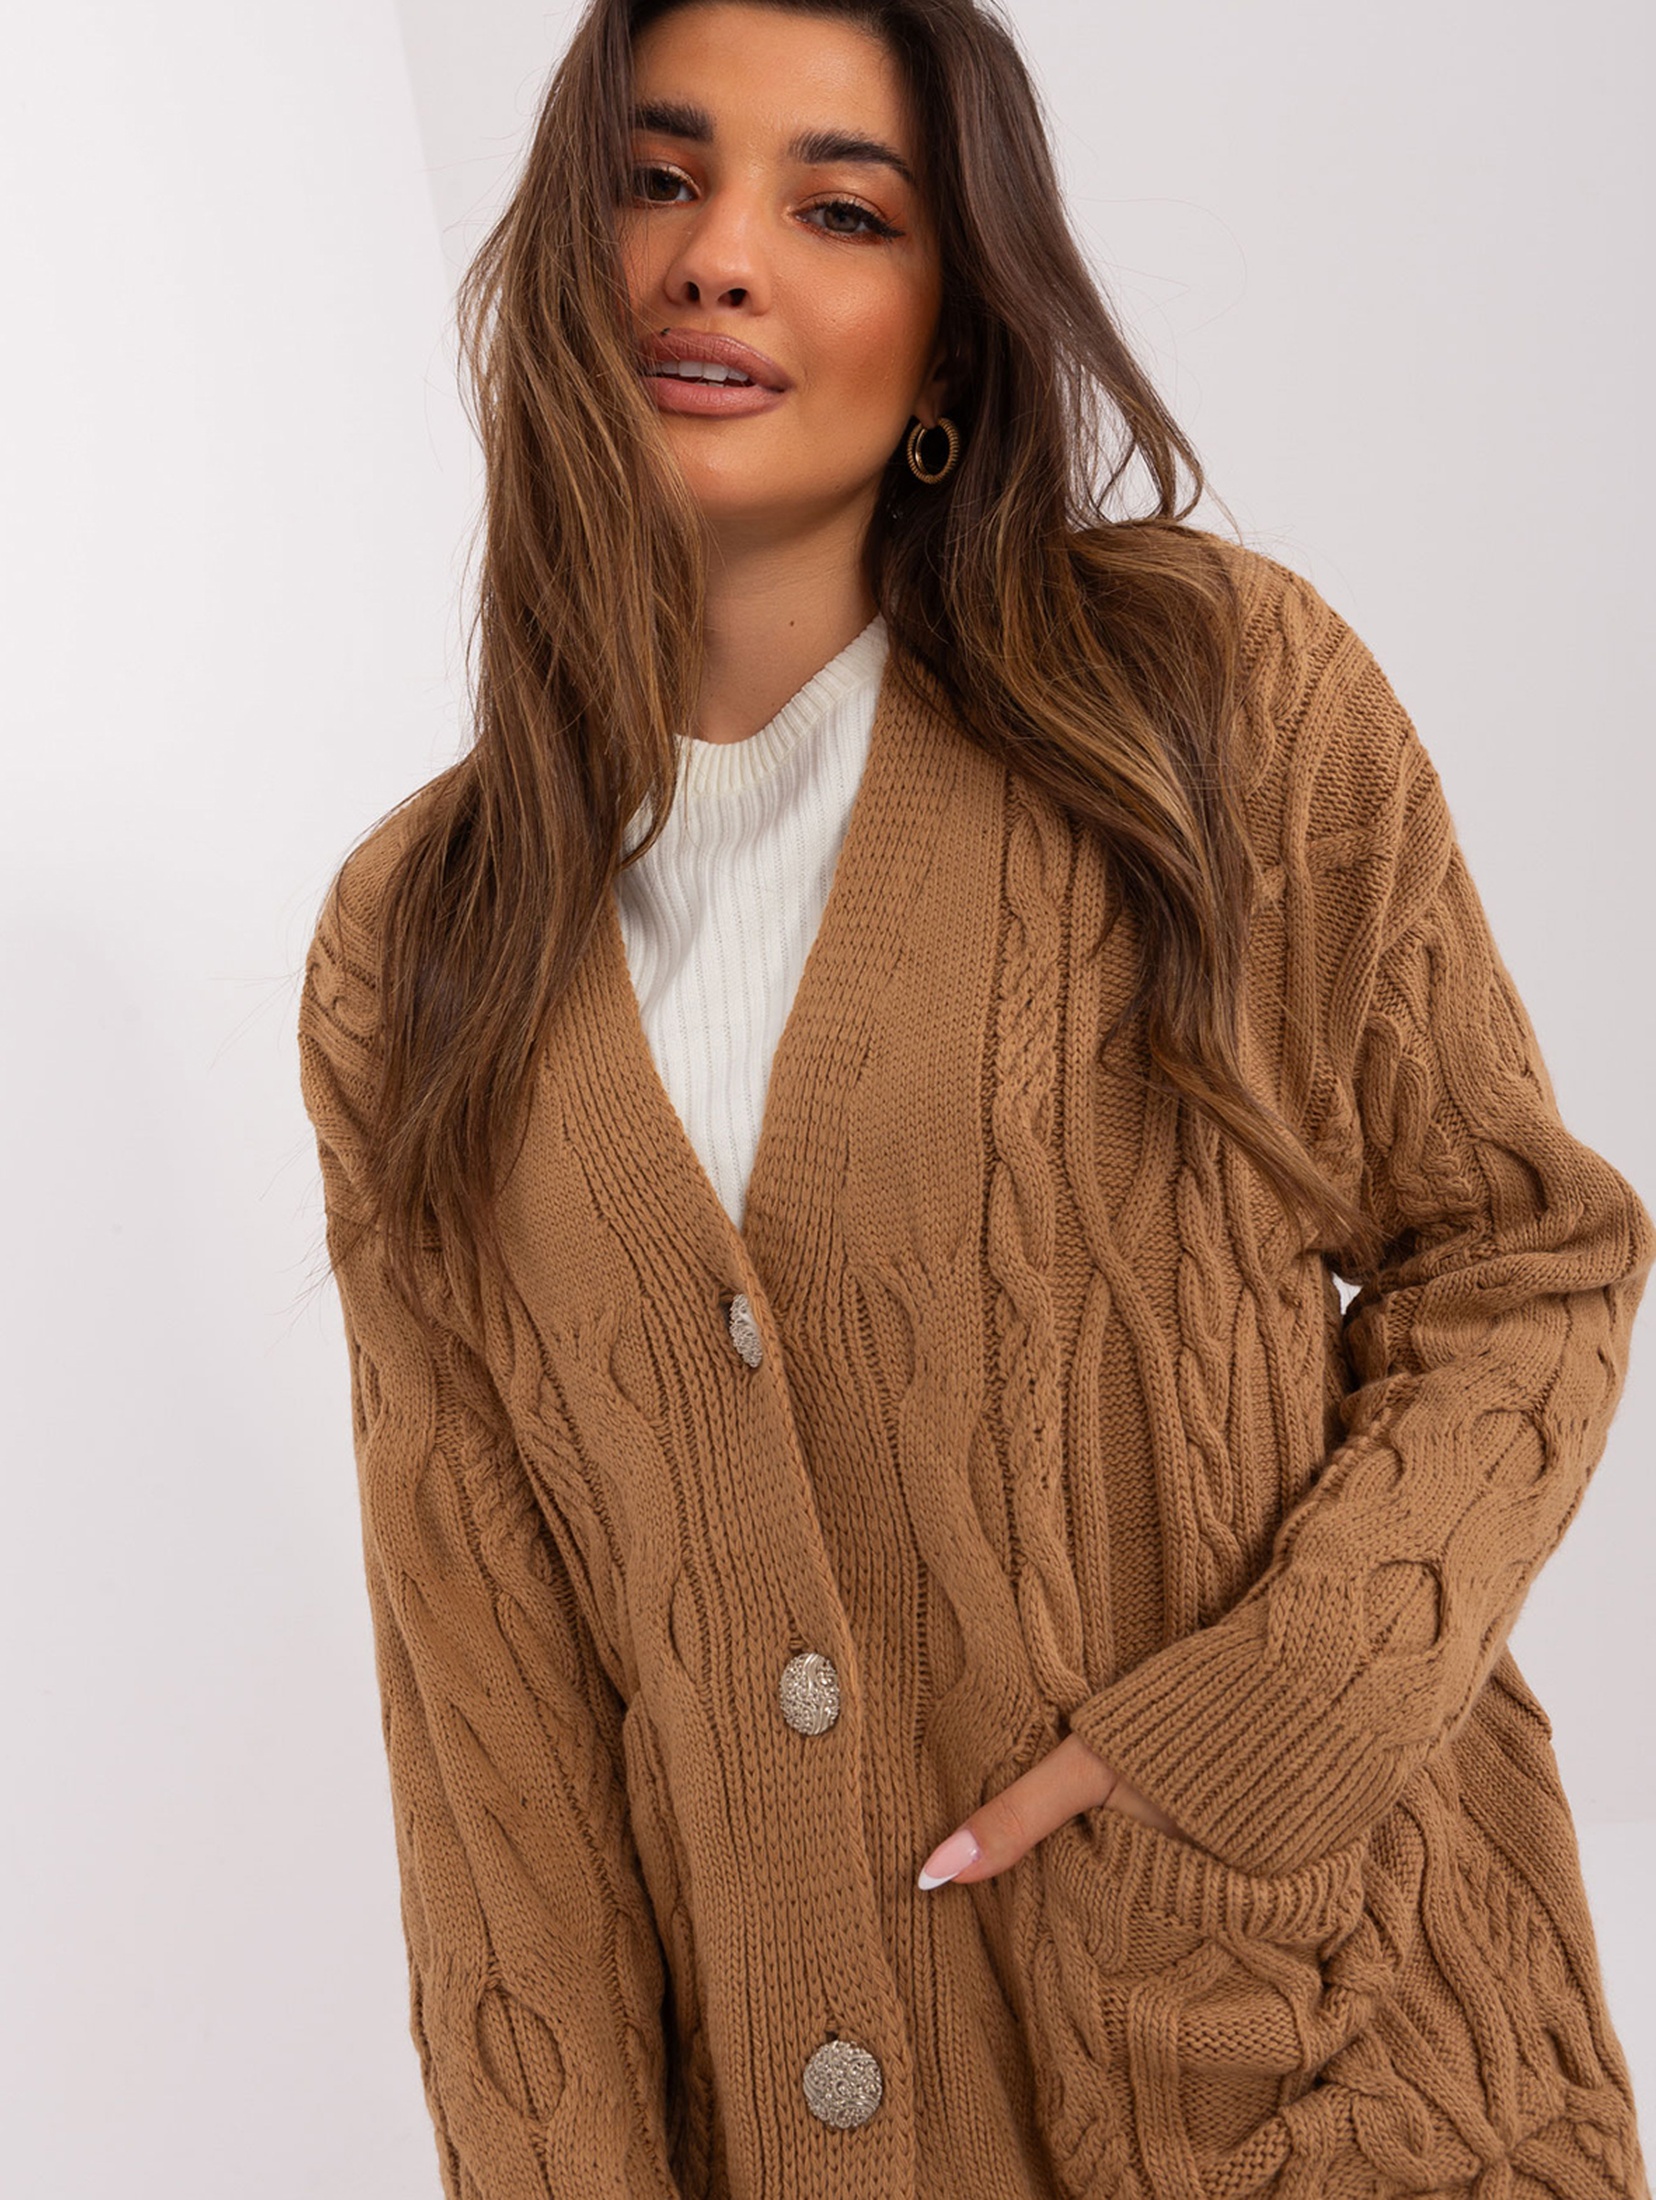 Camelowy rozpinany sweter w warkoczowe wzory